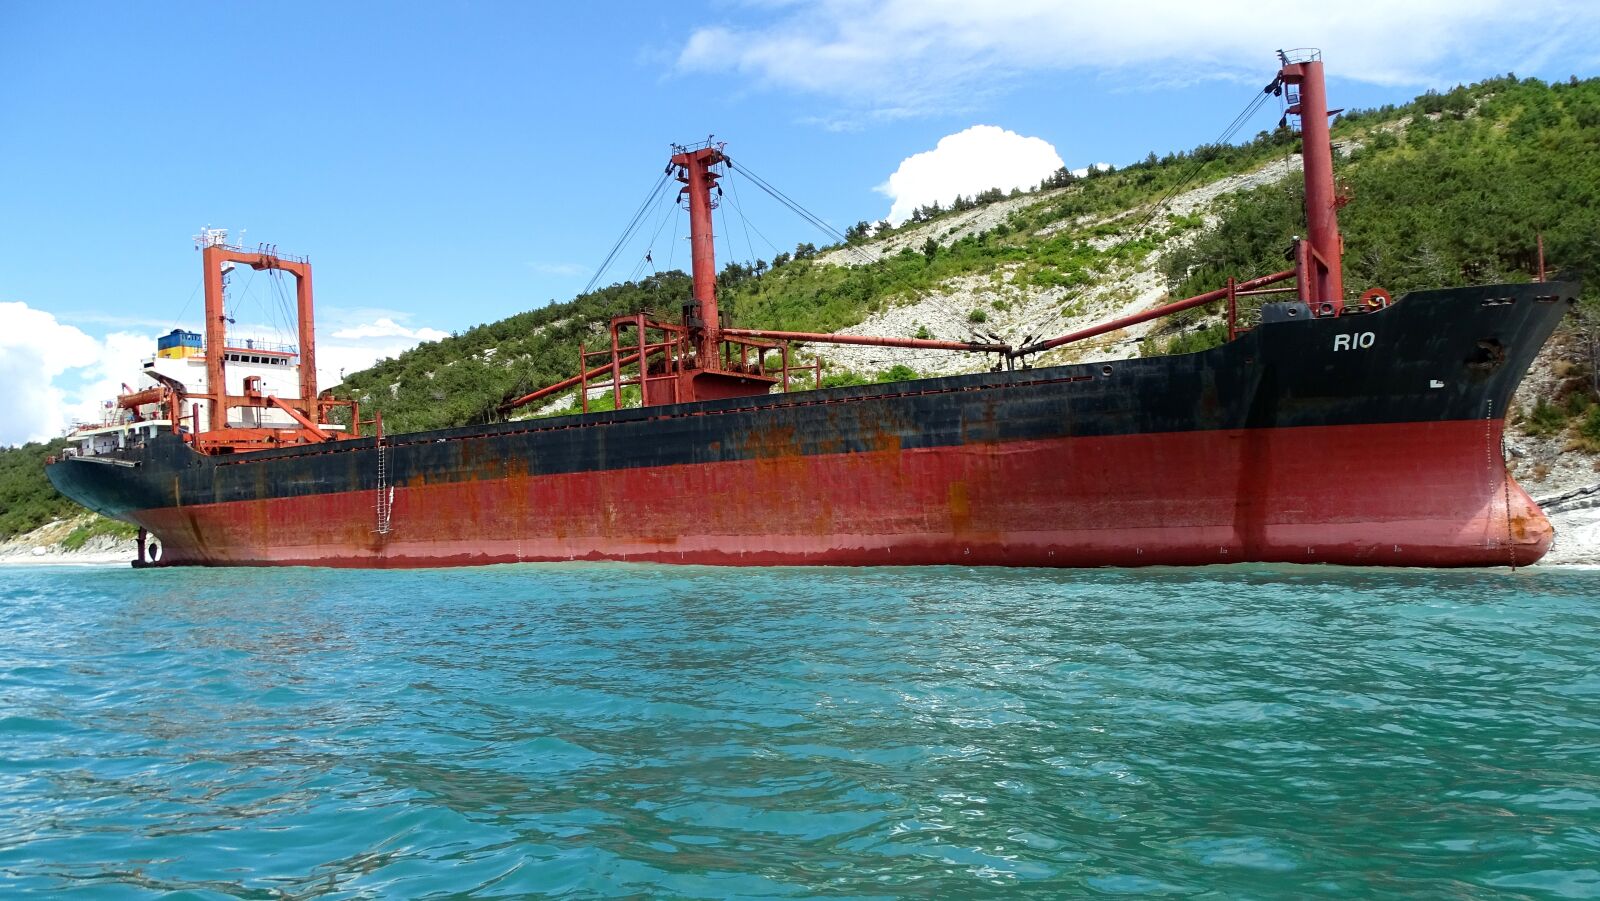 Sony DSC-HX400 sample photo. Dry-cargo ship, shoal, sea photography